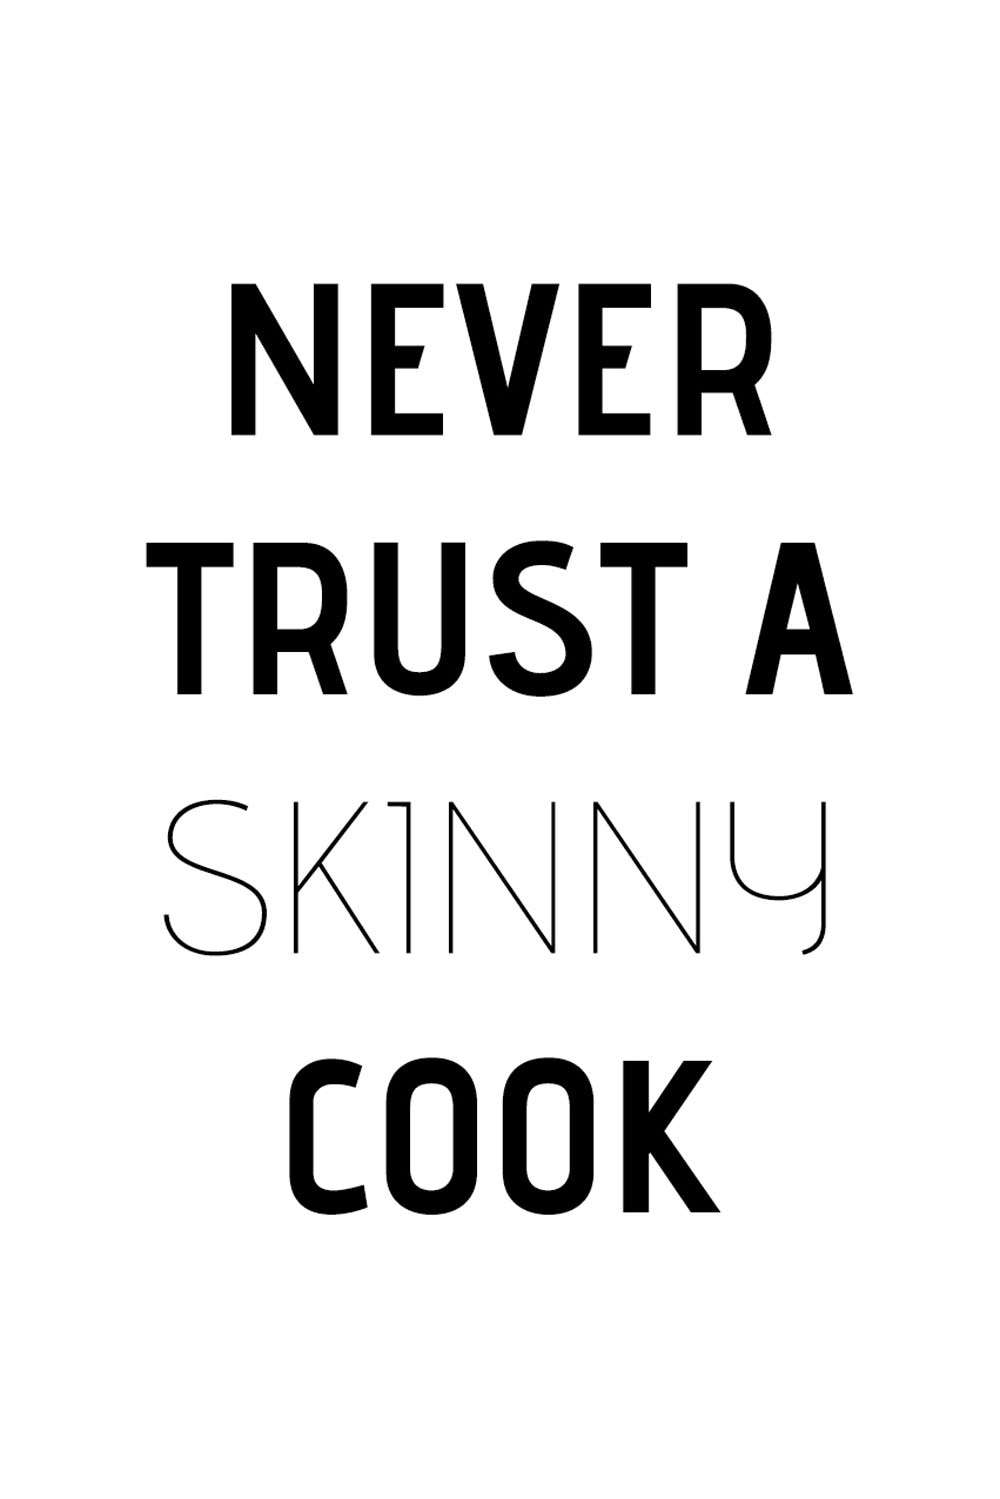 Wanddekoobjekt »Never trust a skinny cook«, Schriftzug auf Stahlblech